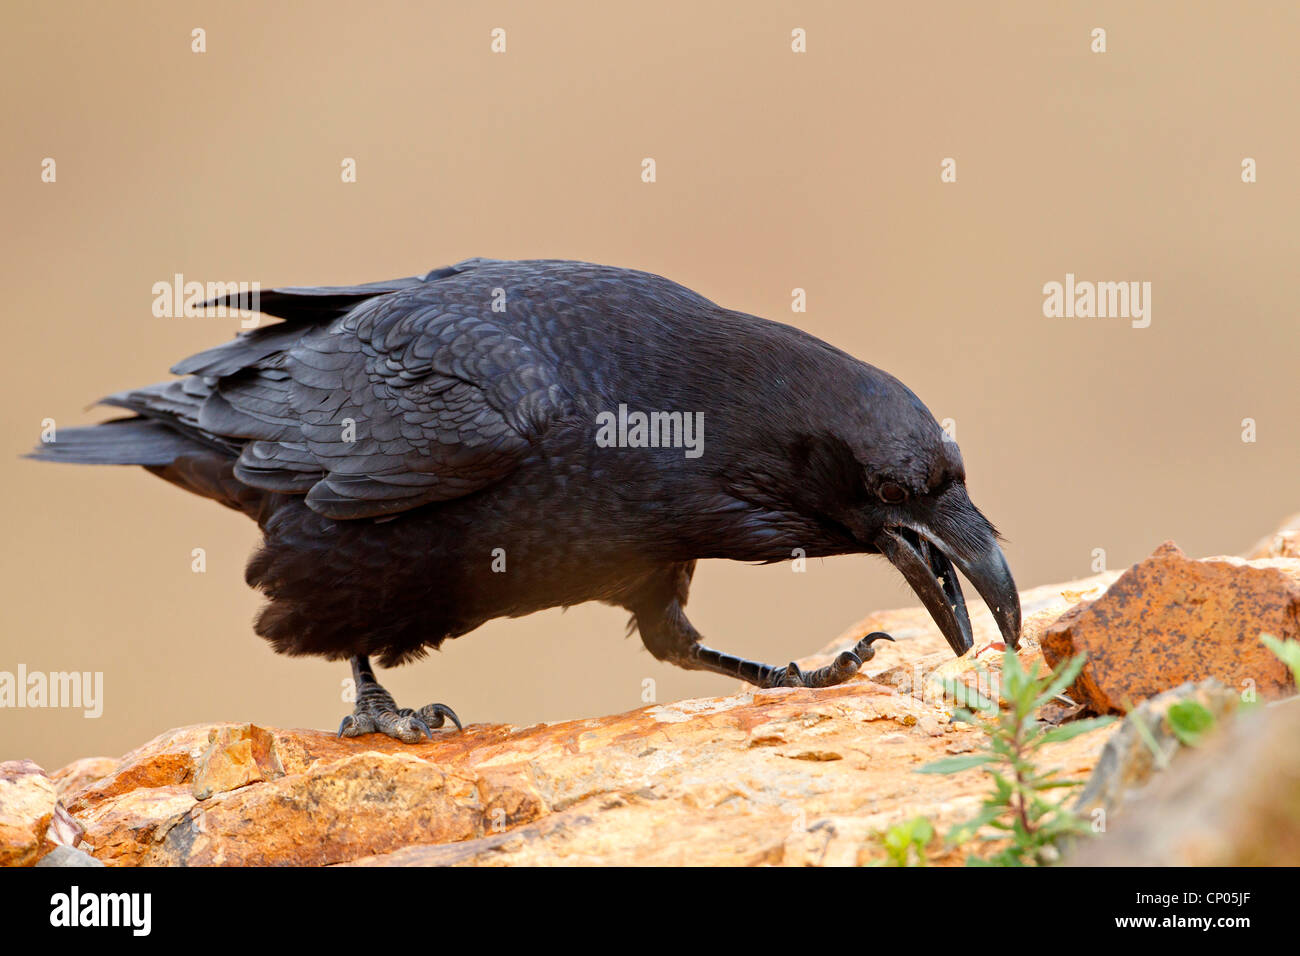 Cuervo del norte de África (Corvus corax tingitanus, Corvus tingitanus), sentado sobre una piedra en busca de comida, Islas Canarias, Fuerteventura Foto de stock